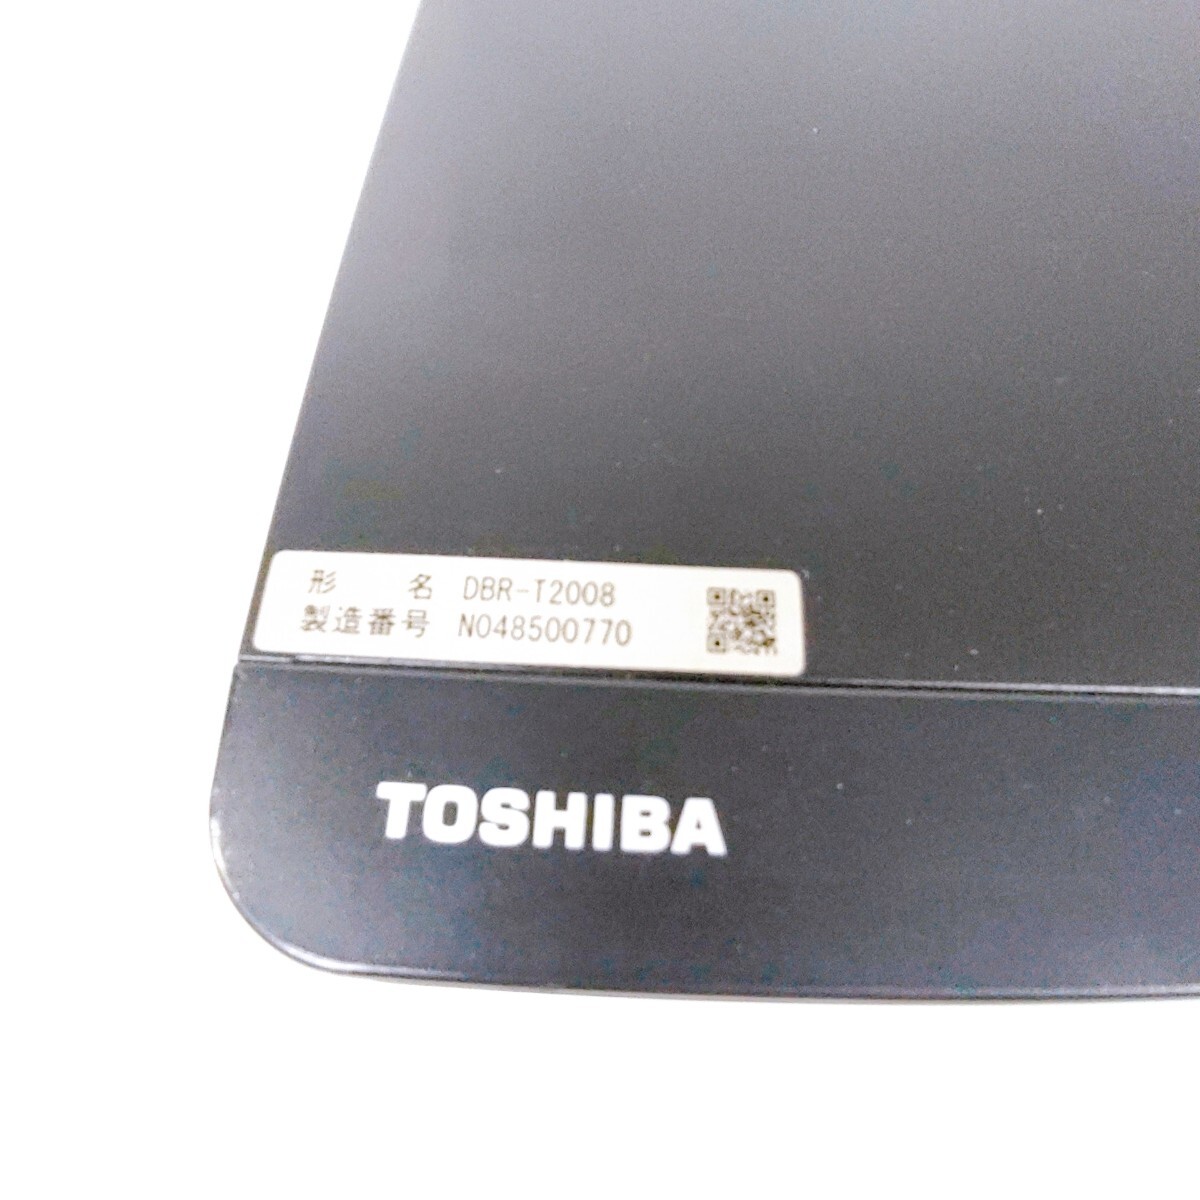 TOSHIBA REGZA レグザブルーレイ DBR-T2008